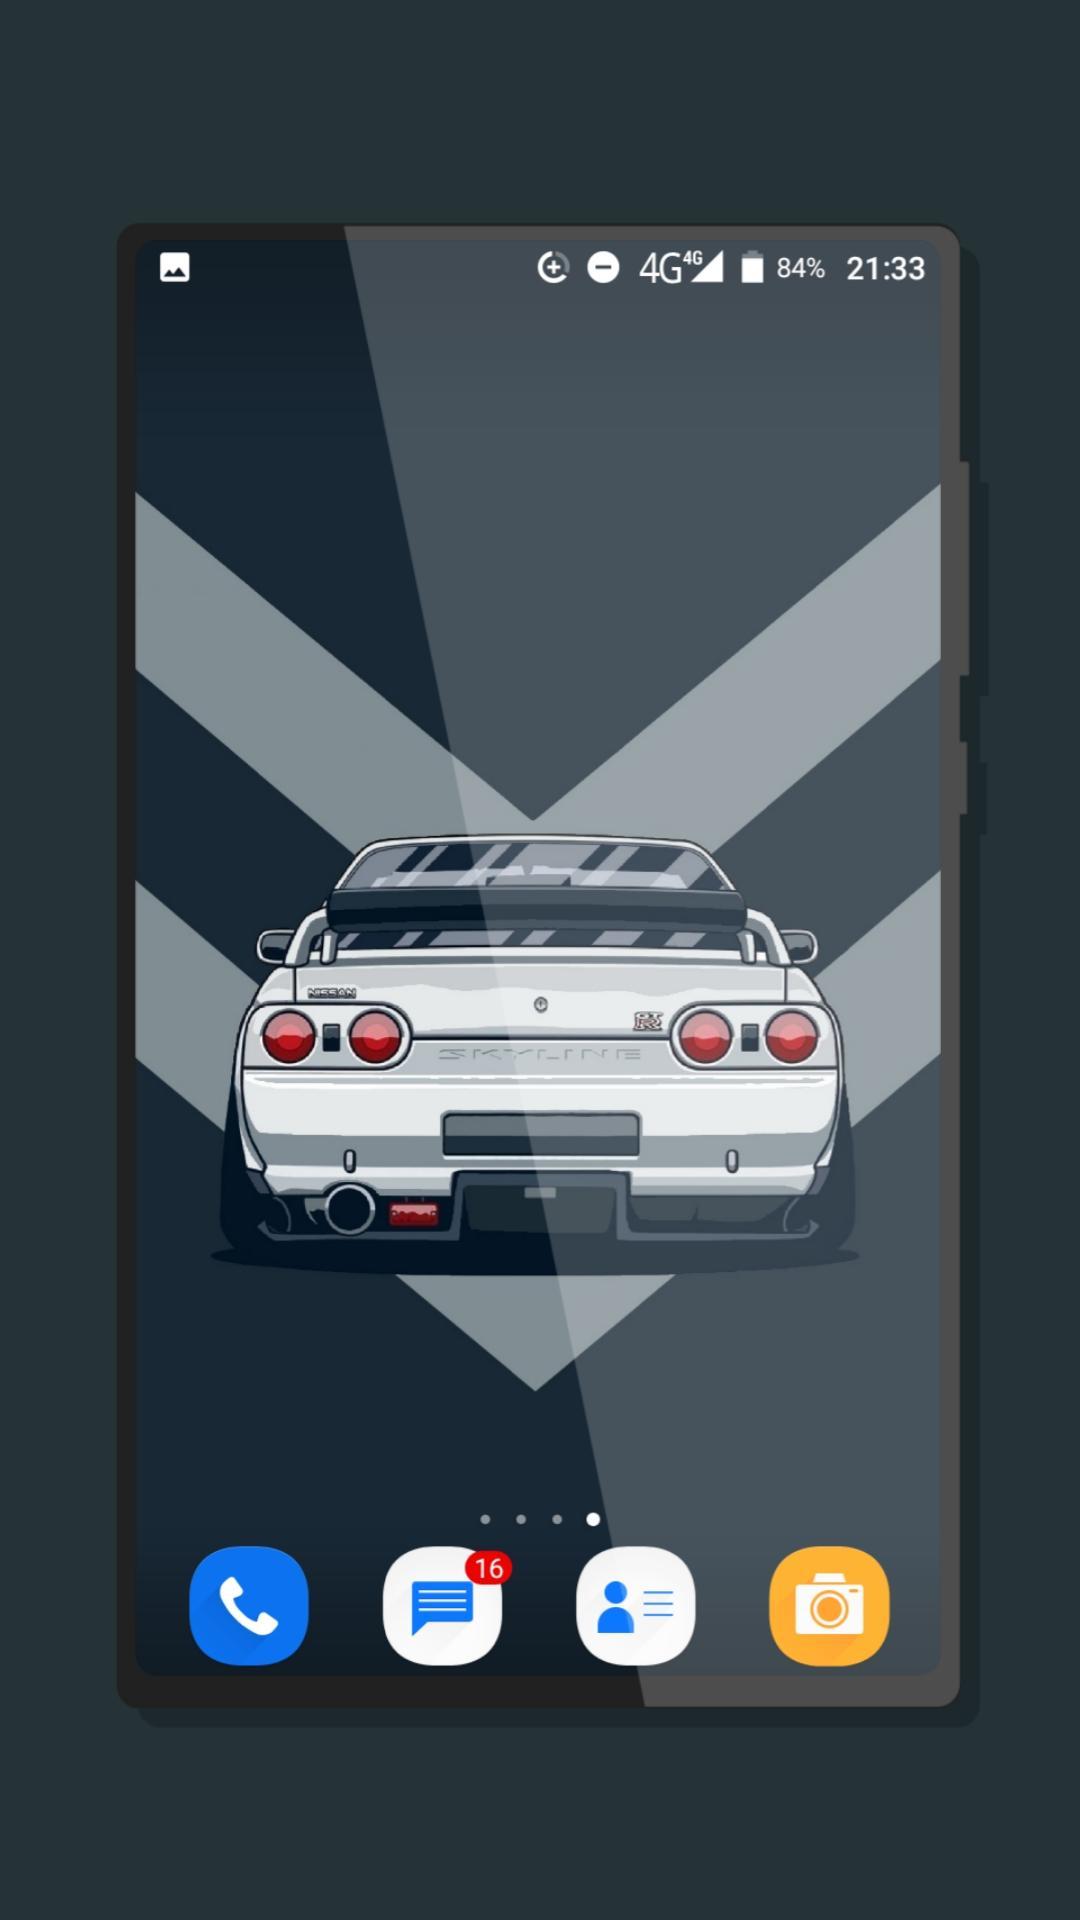 ดาวน์โหลด JDM Cars Wallpaper APK สำหรับ Android